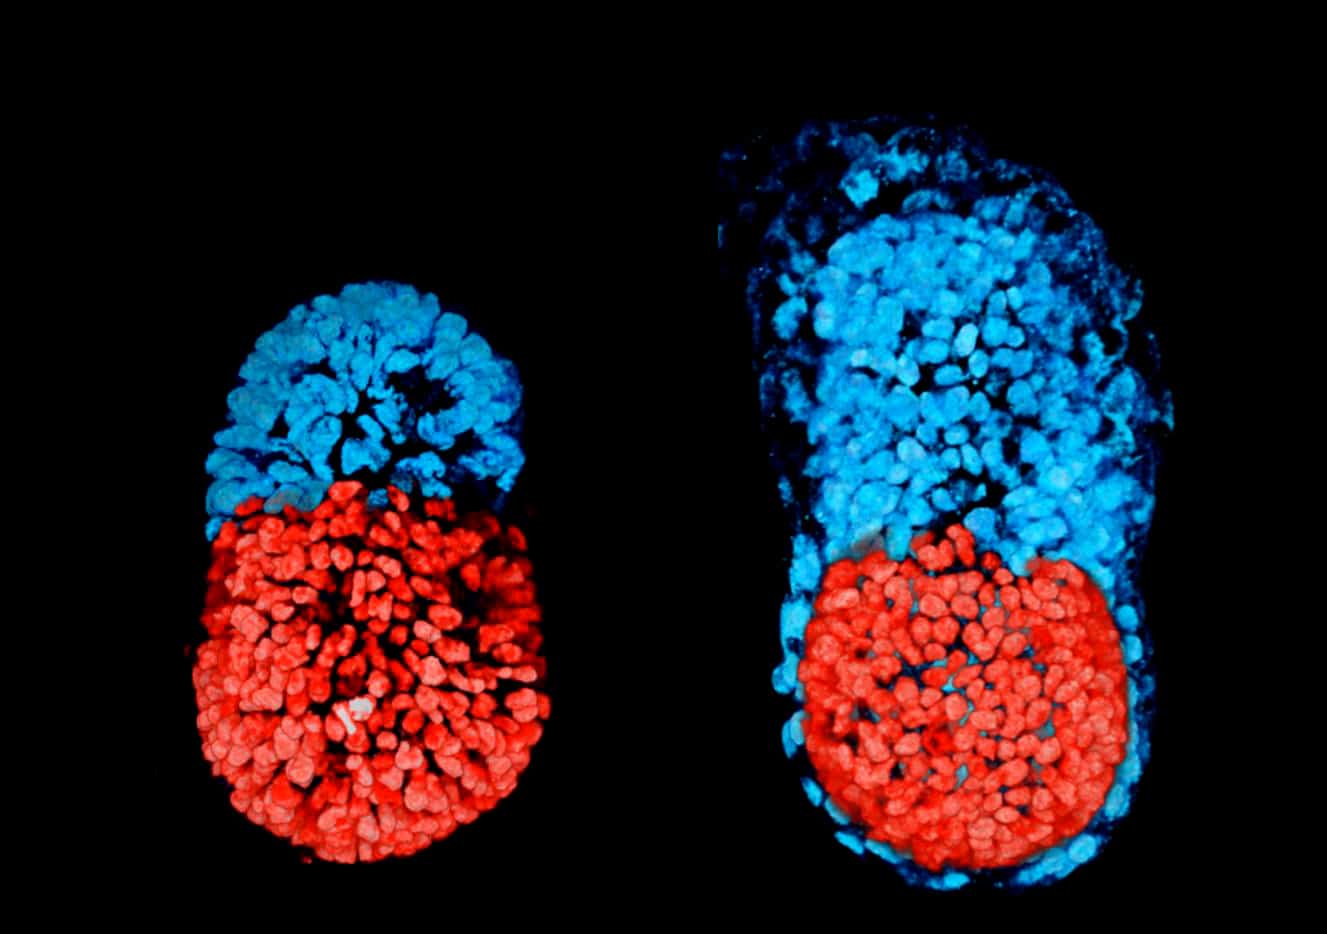 Crean el primer “embrión” artificial a partir de células madre